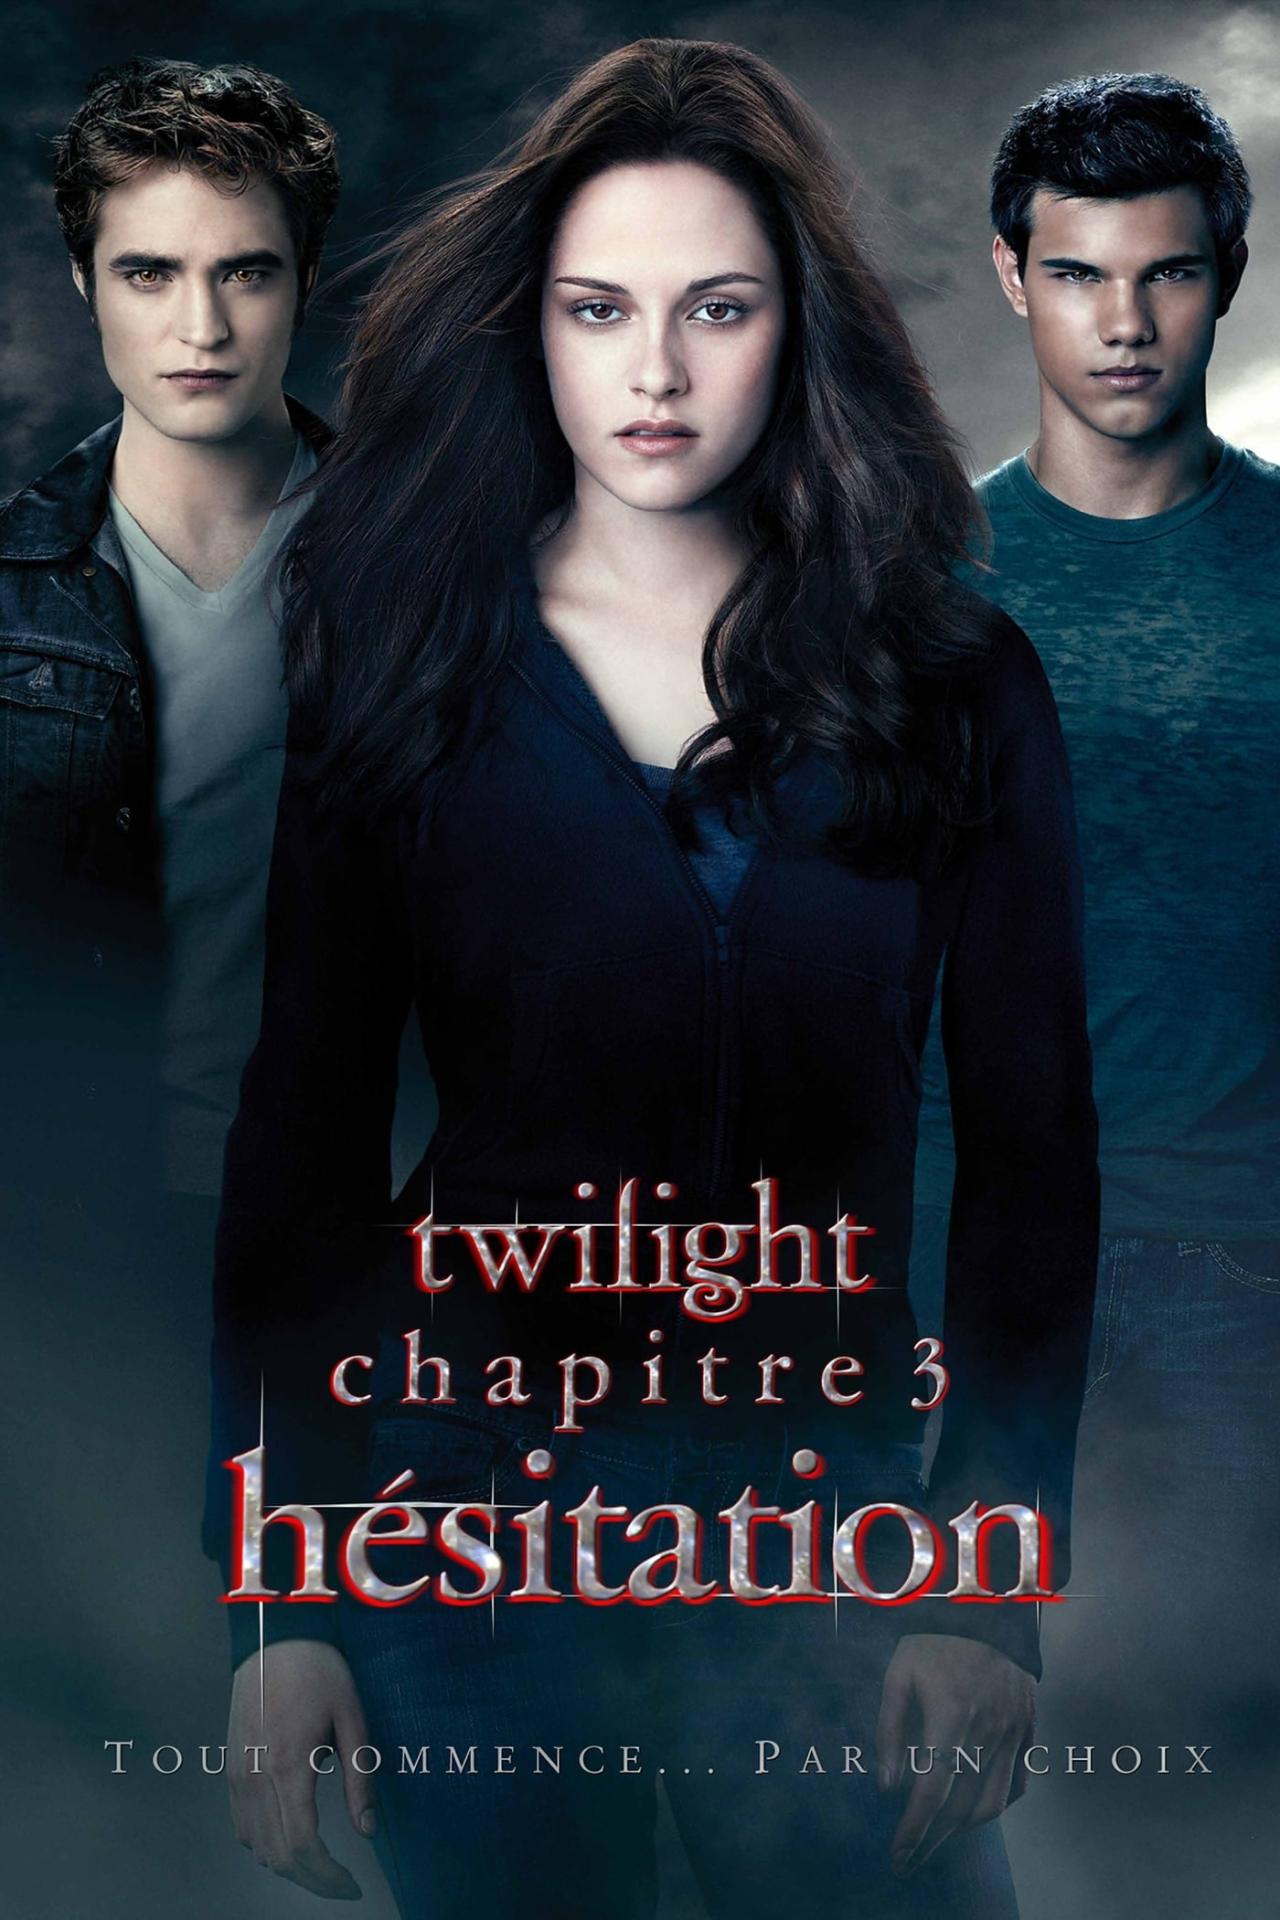 Twilight, chapitre 3 : Hésitation est-il disponible sur Netflix ou autre ?